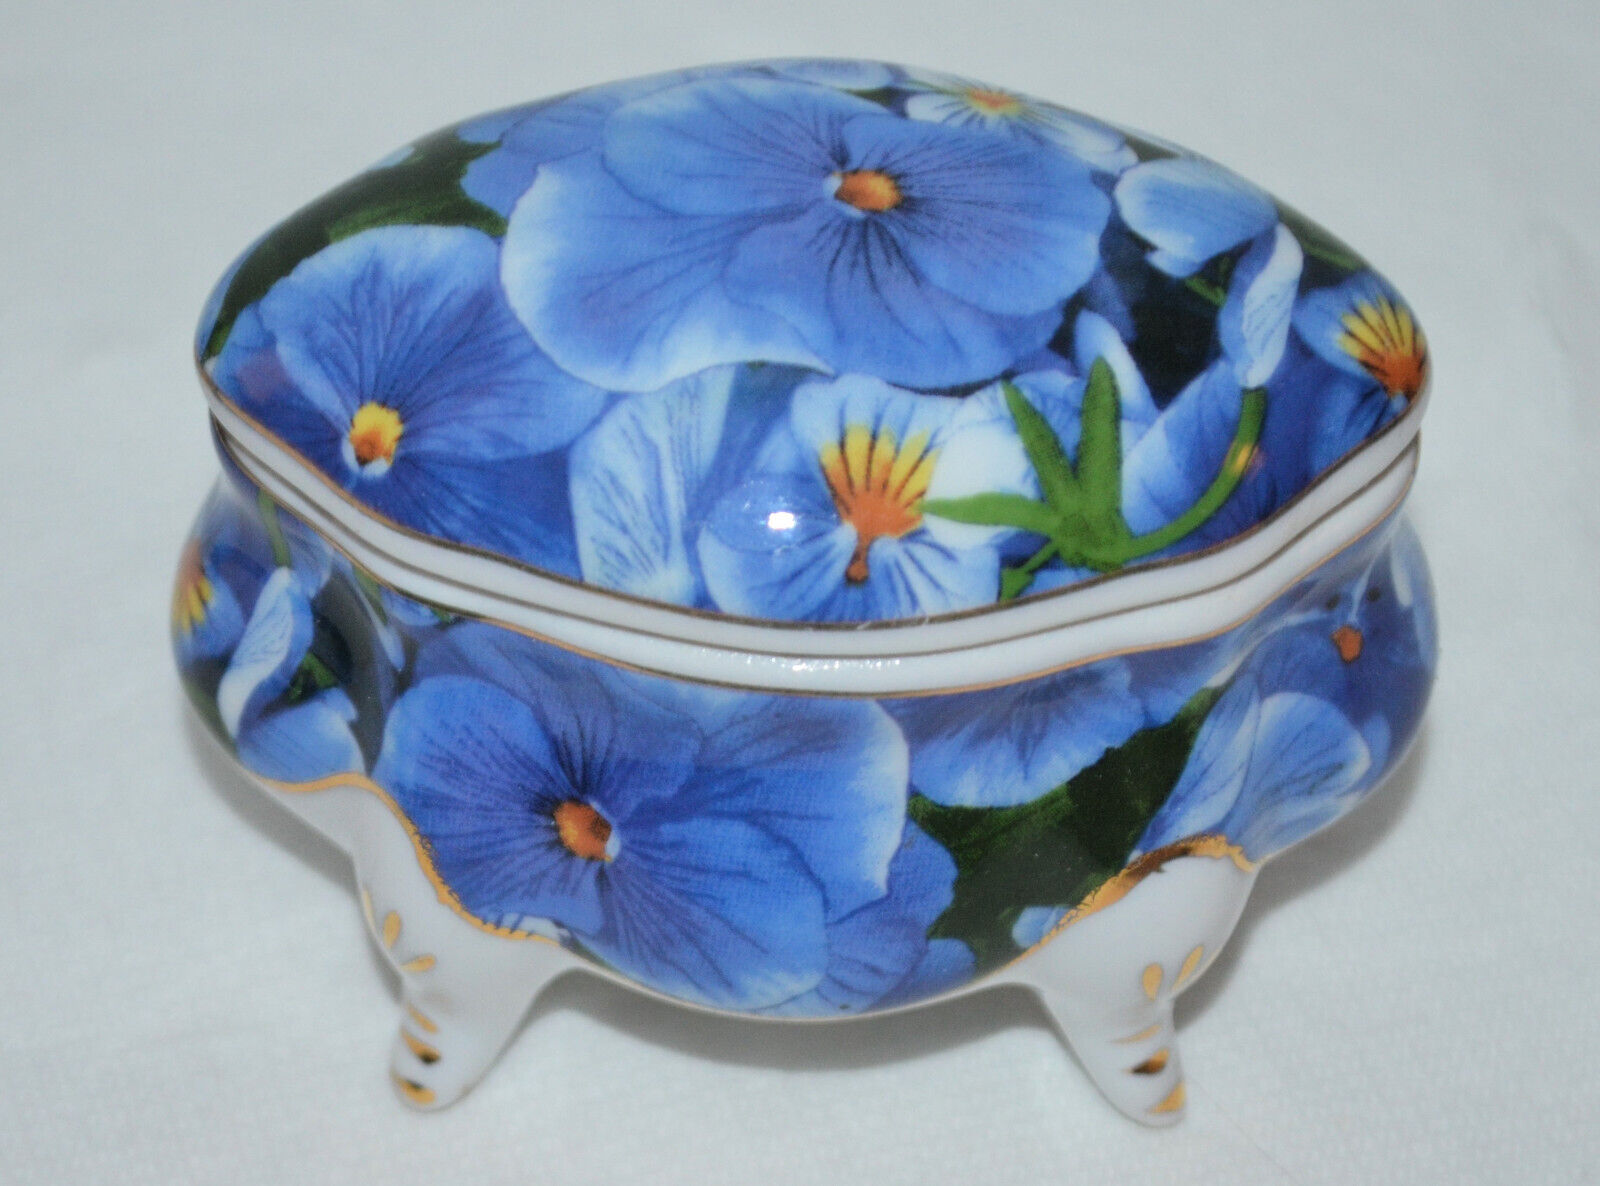 Vintage Porcelain Trinket Box Blue Flowers Gold Accent Lidded & Snail on Bottom